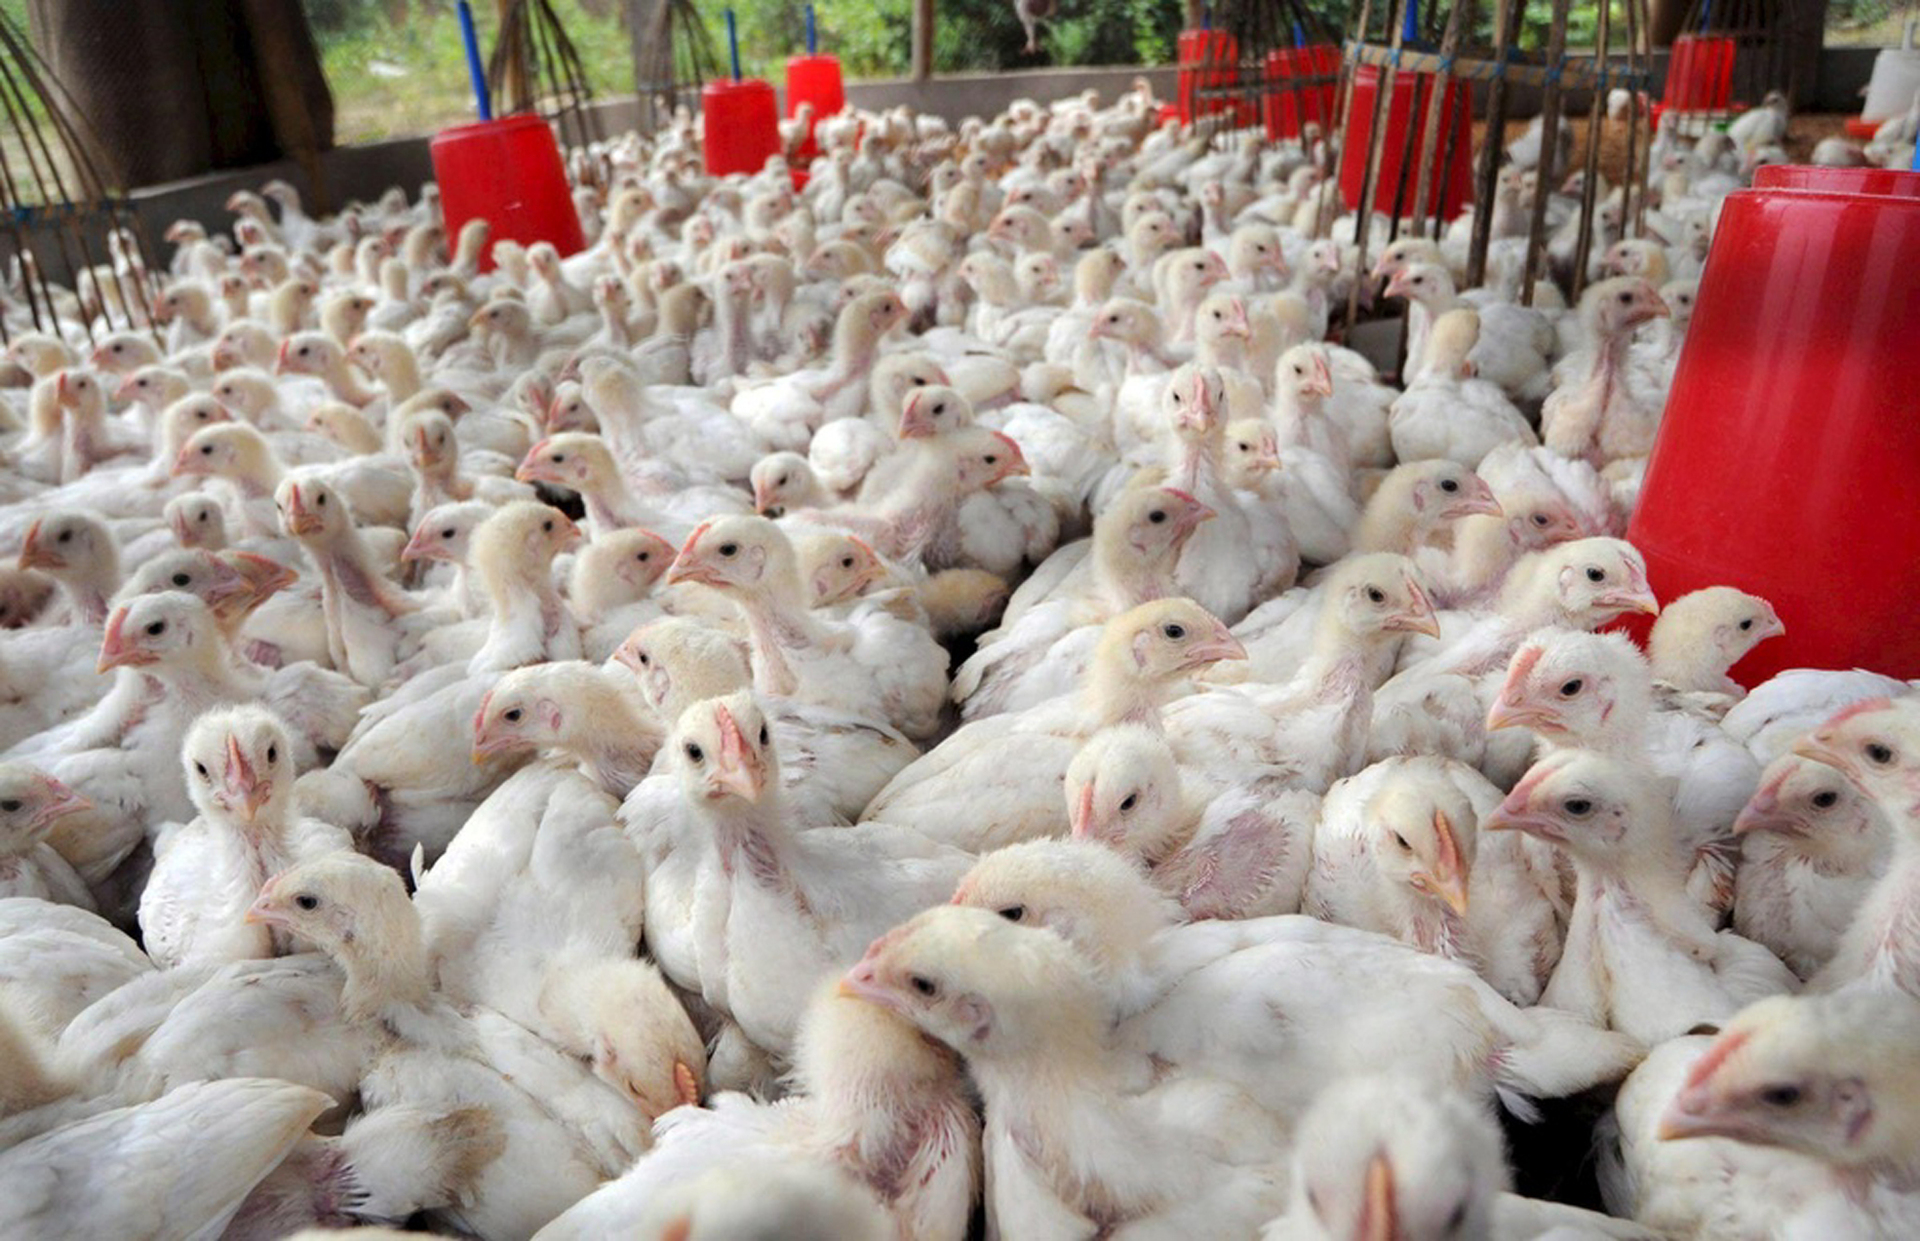 Aumento de casos de gripe aviar afecta industria estadounidense